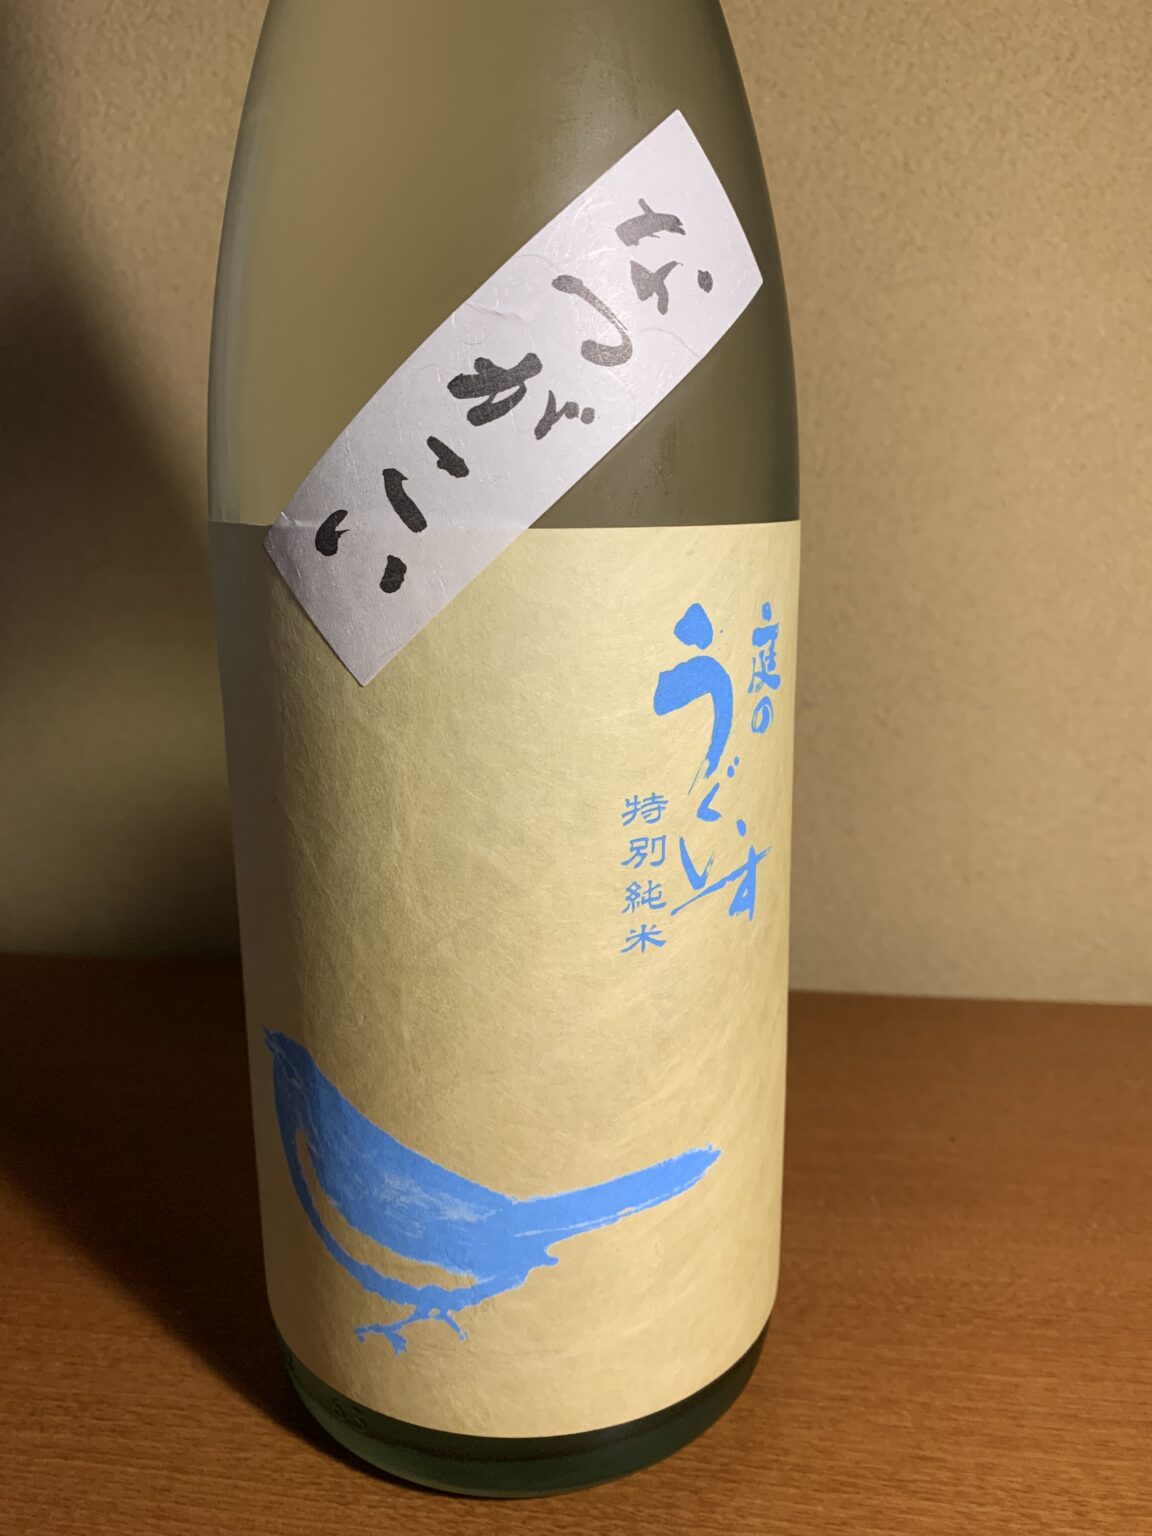 福岡の日本酒『庭の鶯 なつがこい』は爽やかな酸味とふわりとした旨み